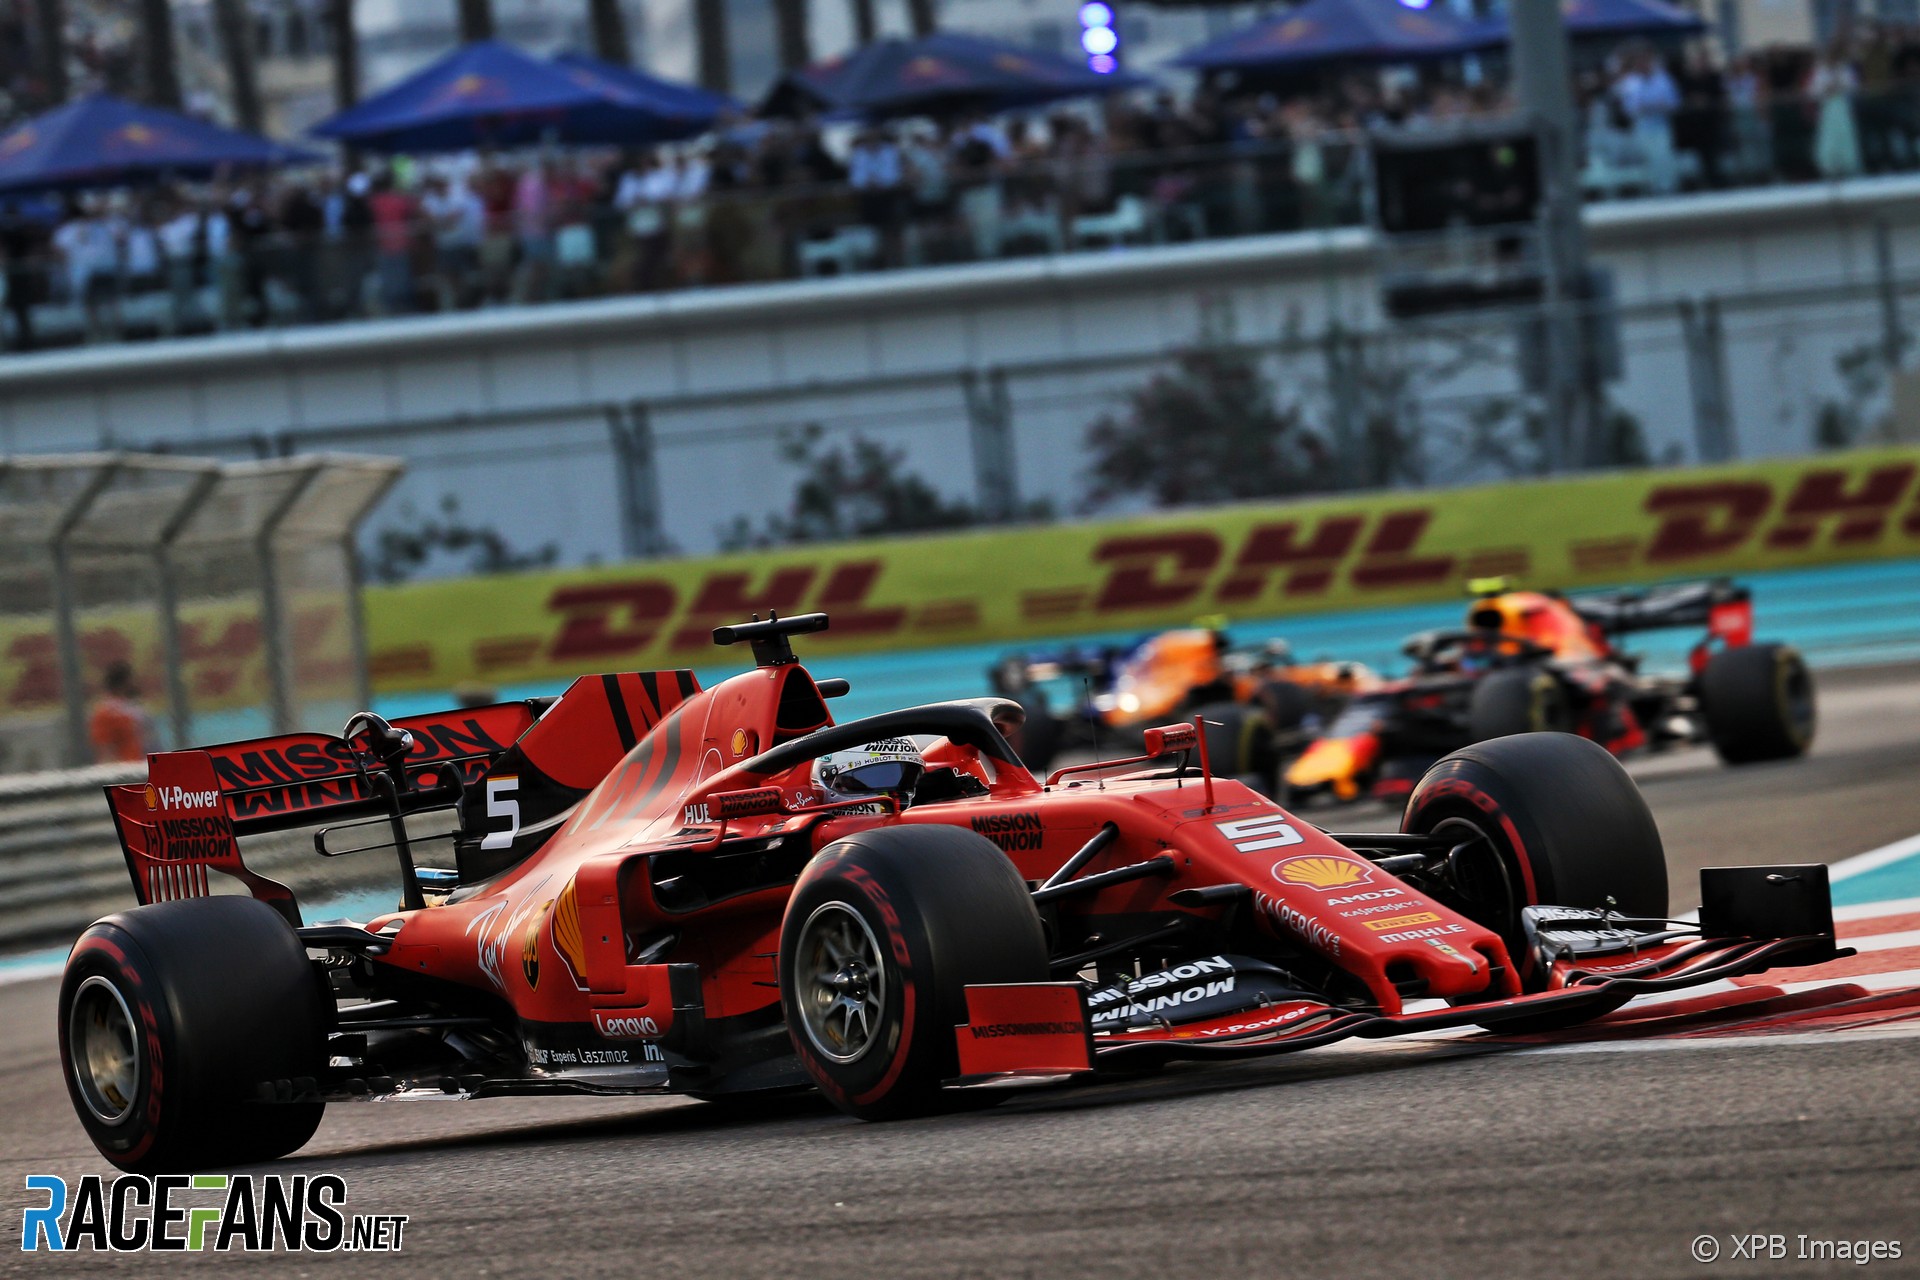 Sebastian Vettel, Ferrari, Yas Marina, 2019